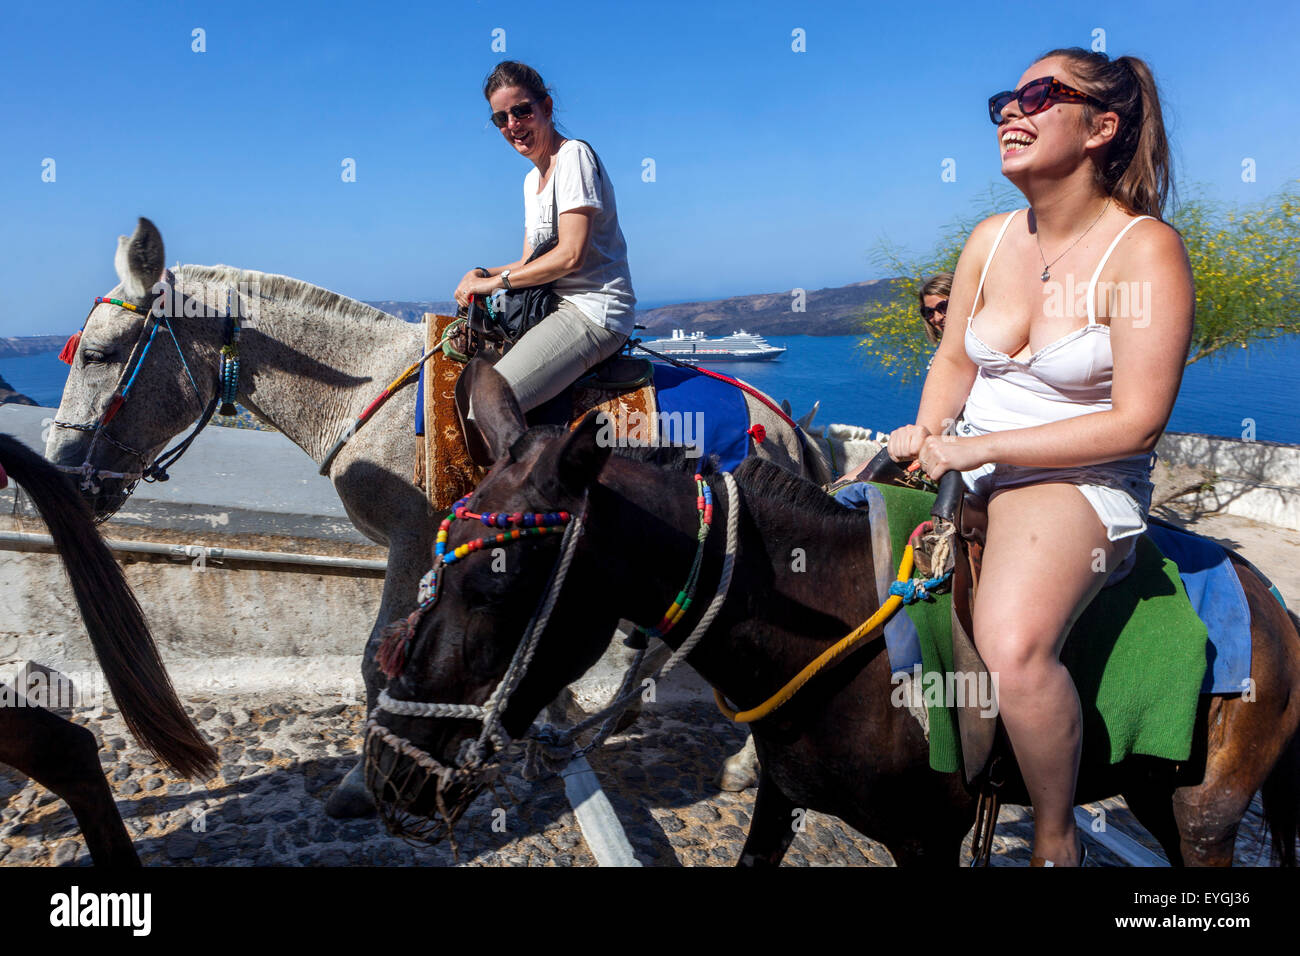 Grèce touristes appréciant la vie, les gens, deux jeunes femmes chevauchant des ânes et riant. Route reliant le port à la ville de Thira Santorini Grèce Banque D'Images